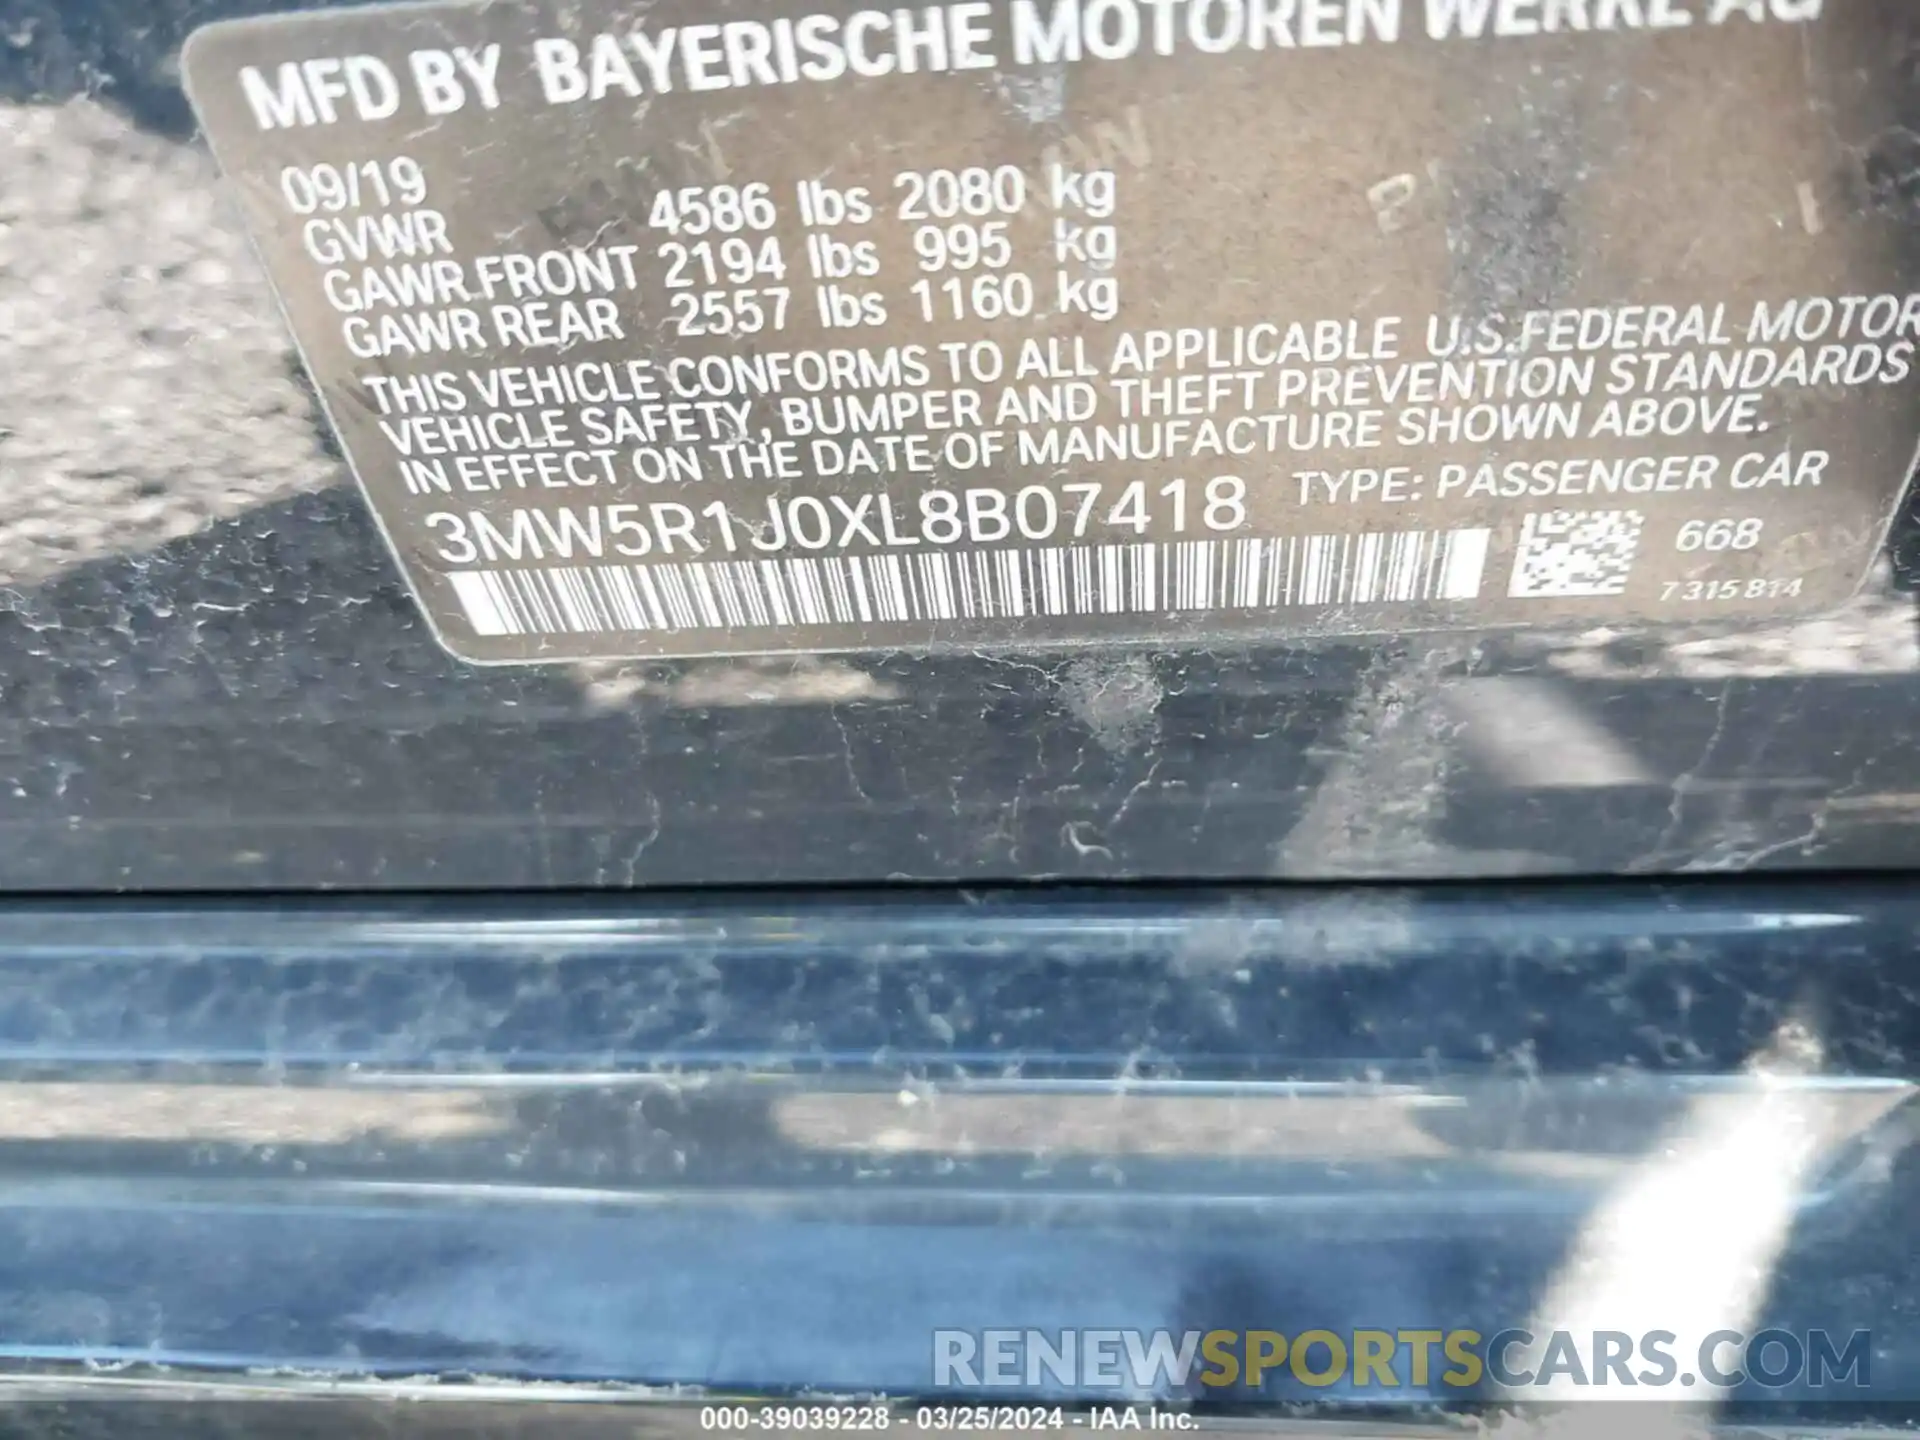 9 Photograph of a damaged car 3MW5R1J0XL8B07418 BMW 330I 2020